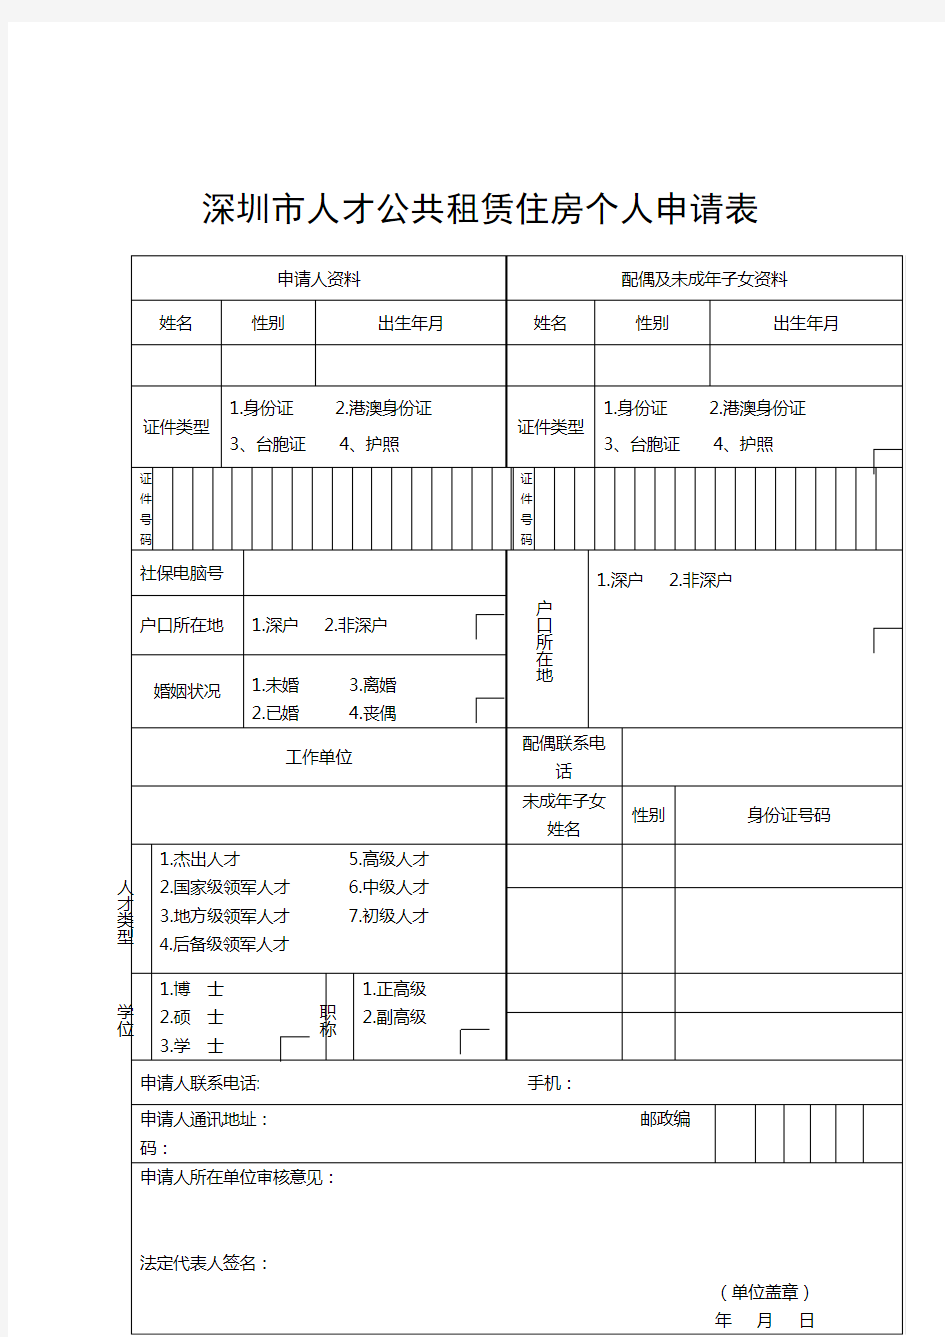 深圳市人才公共租赁住房个人申请表【模板】